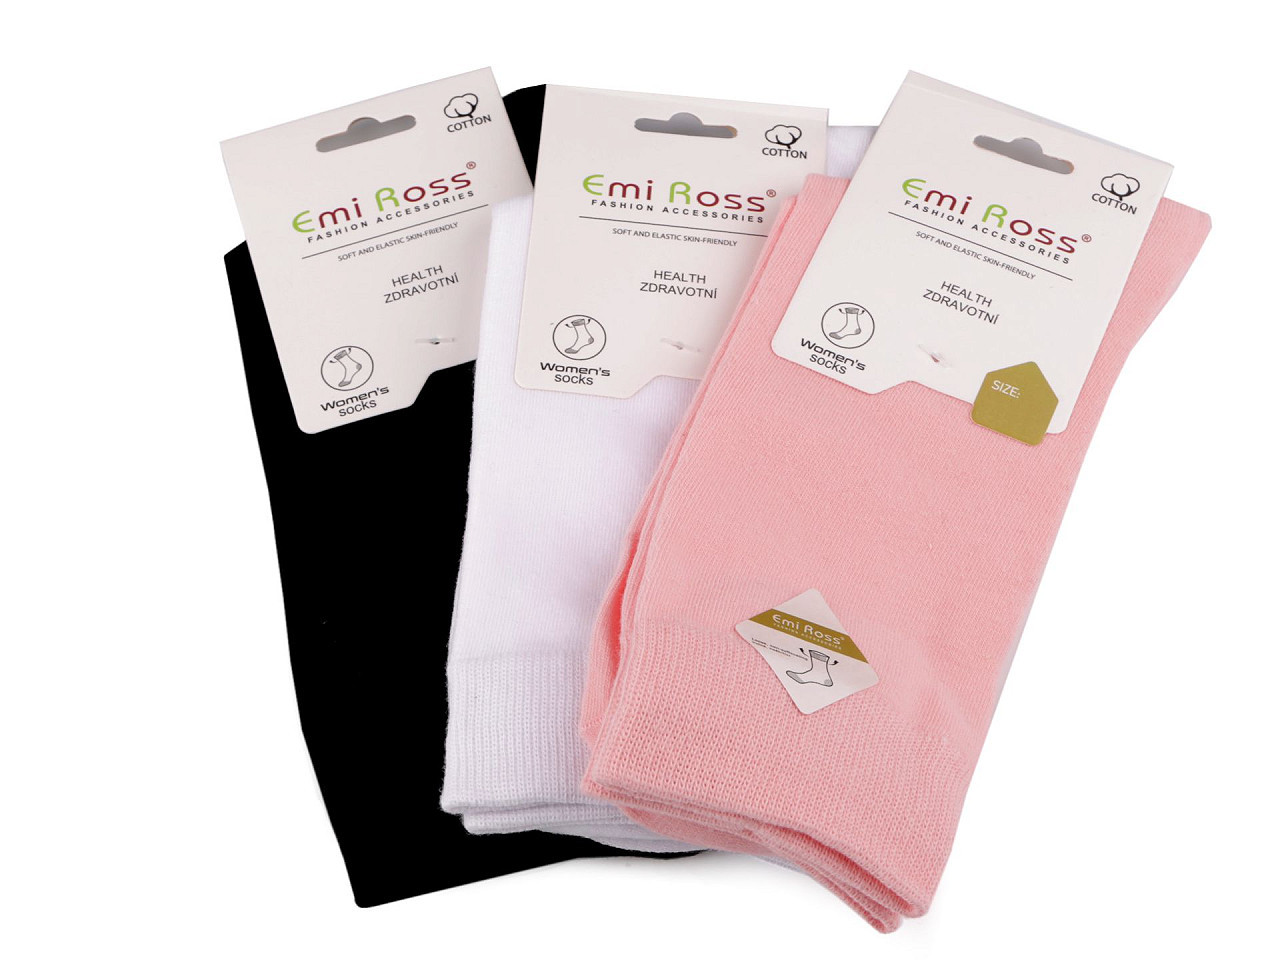 Dámské bavlněné ponožky Emi Ross, barva 26 (vel. 35-38) mix